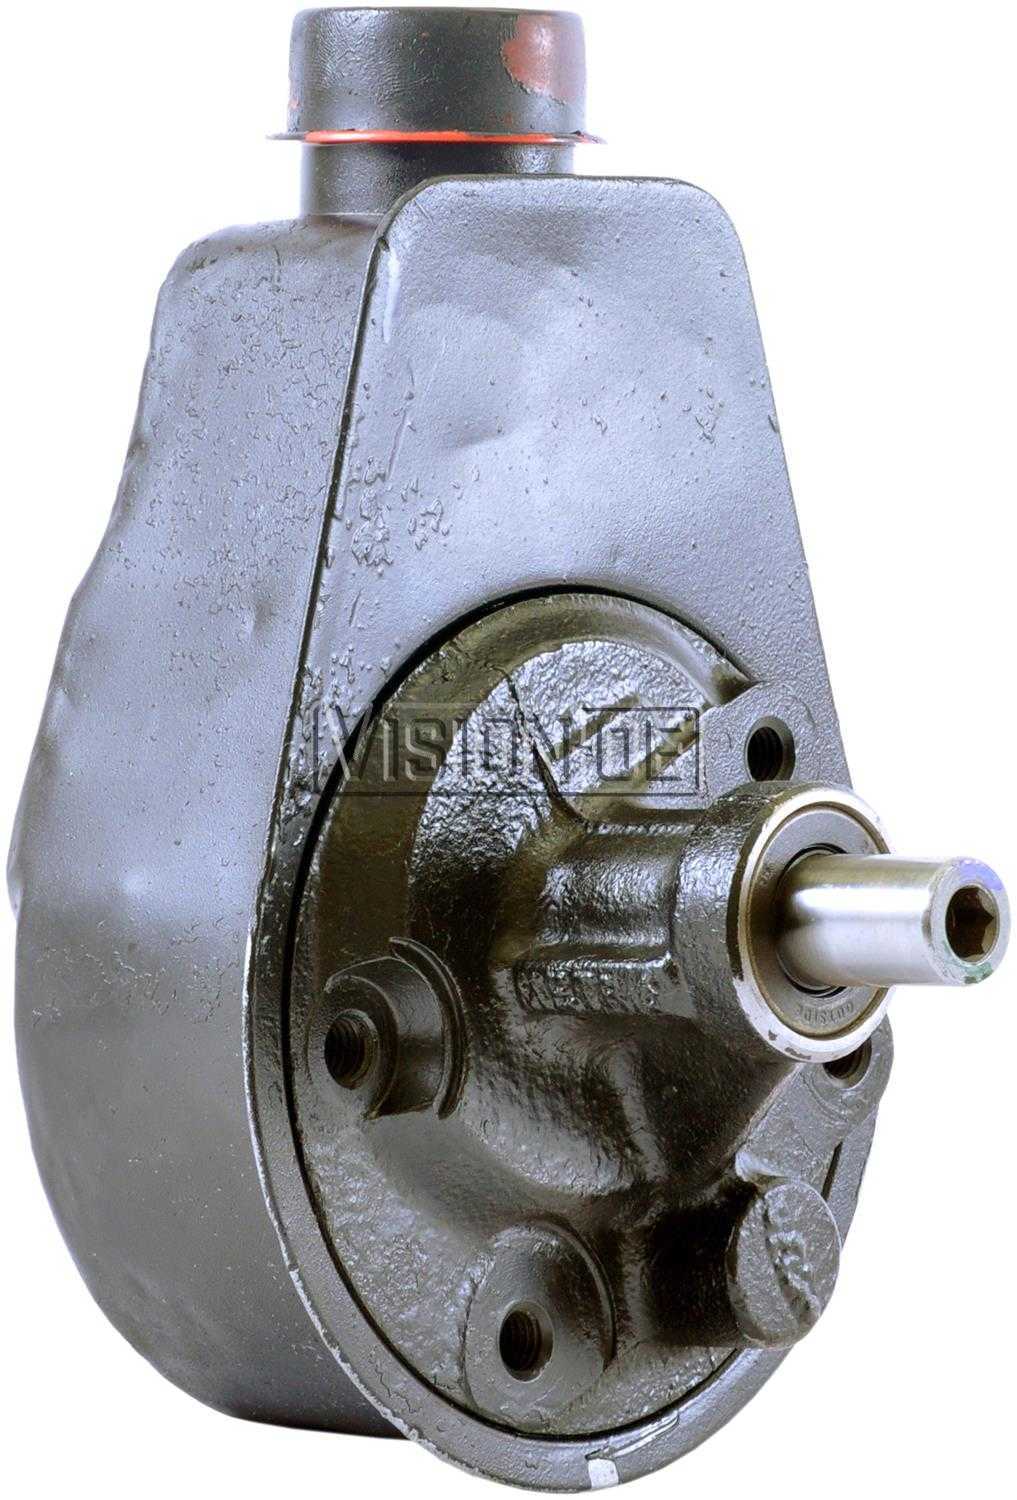 VISION-OE - Reman Power Steering Pump - VOE 731-2148